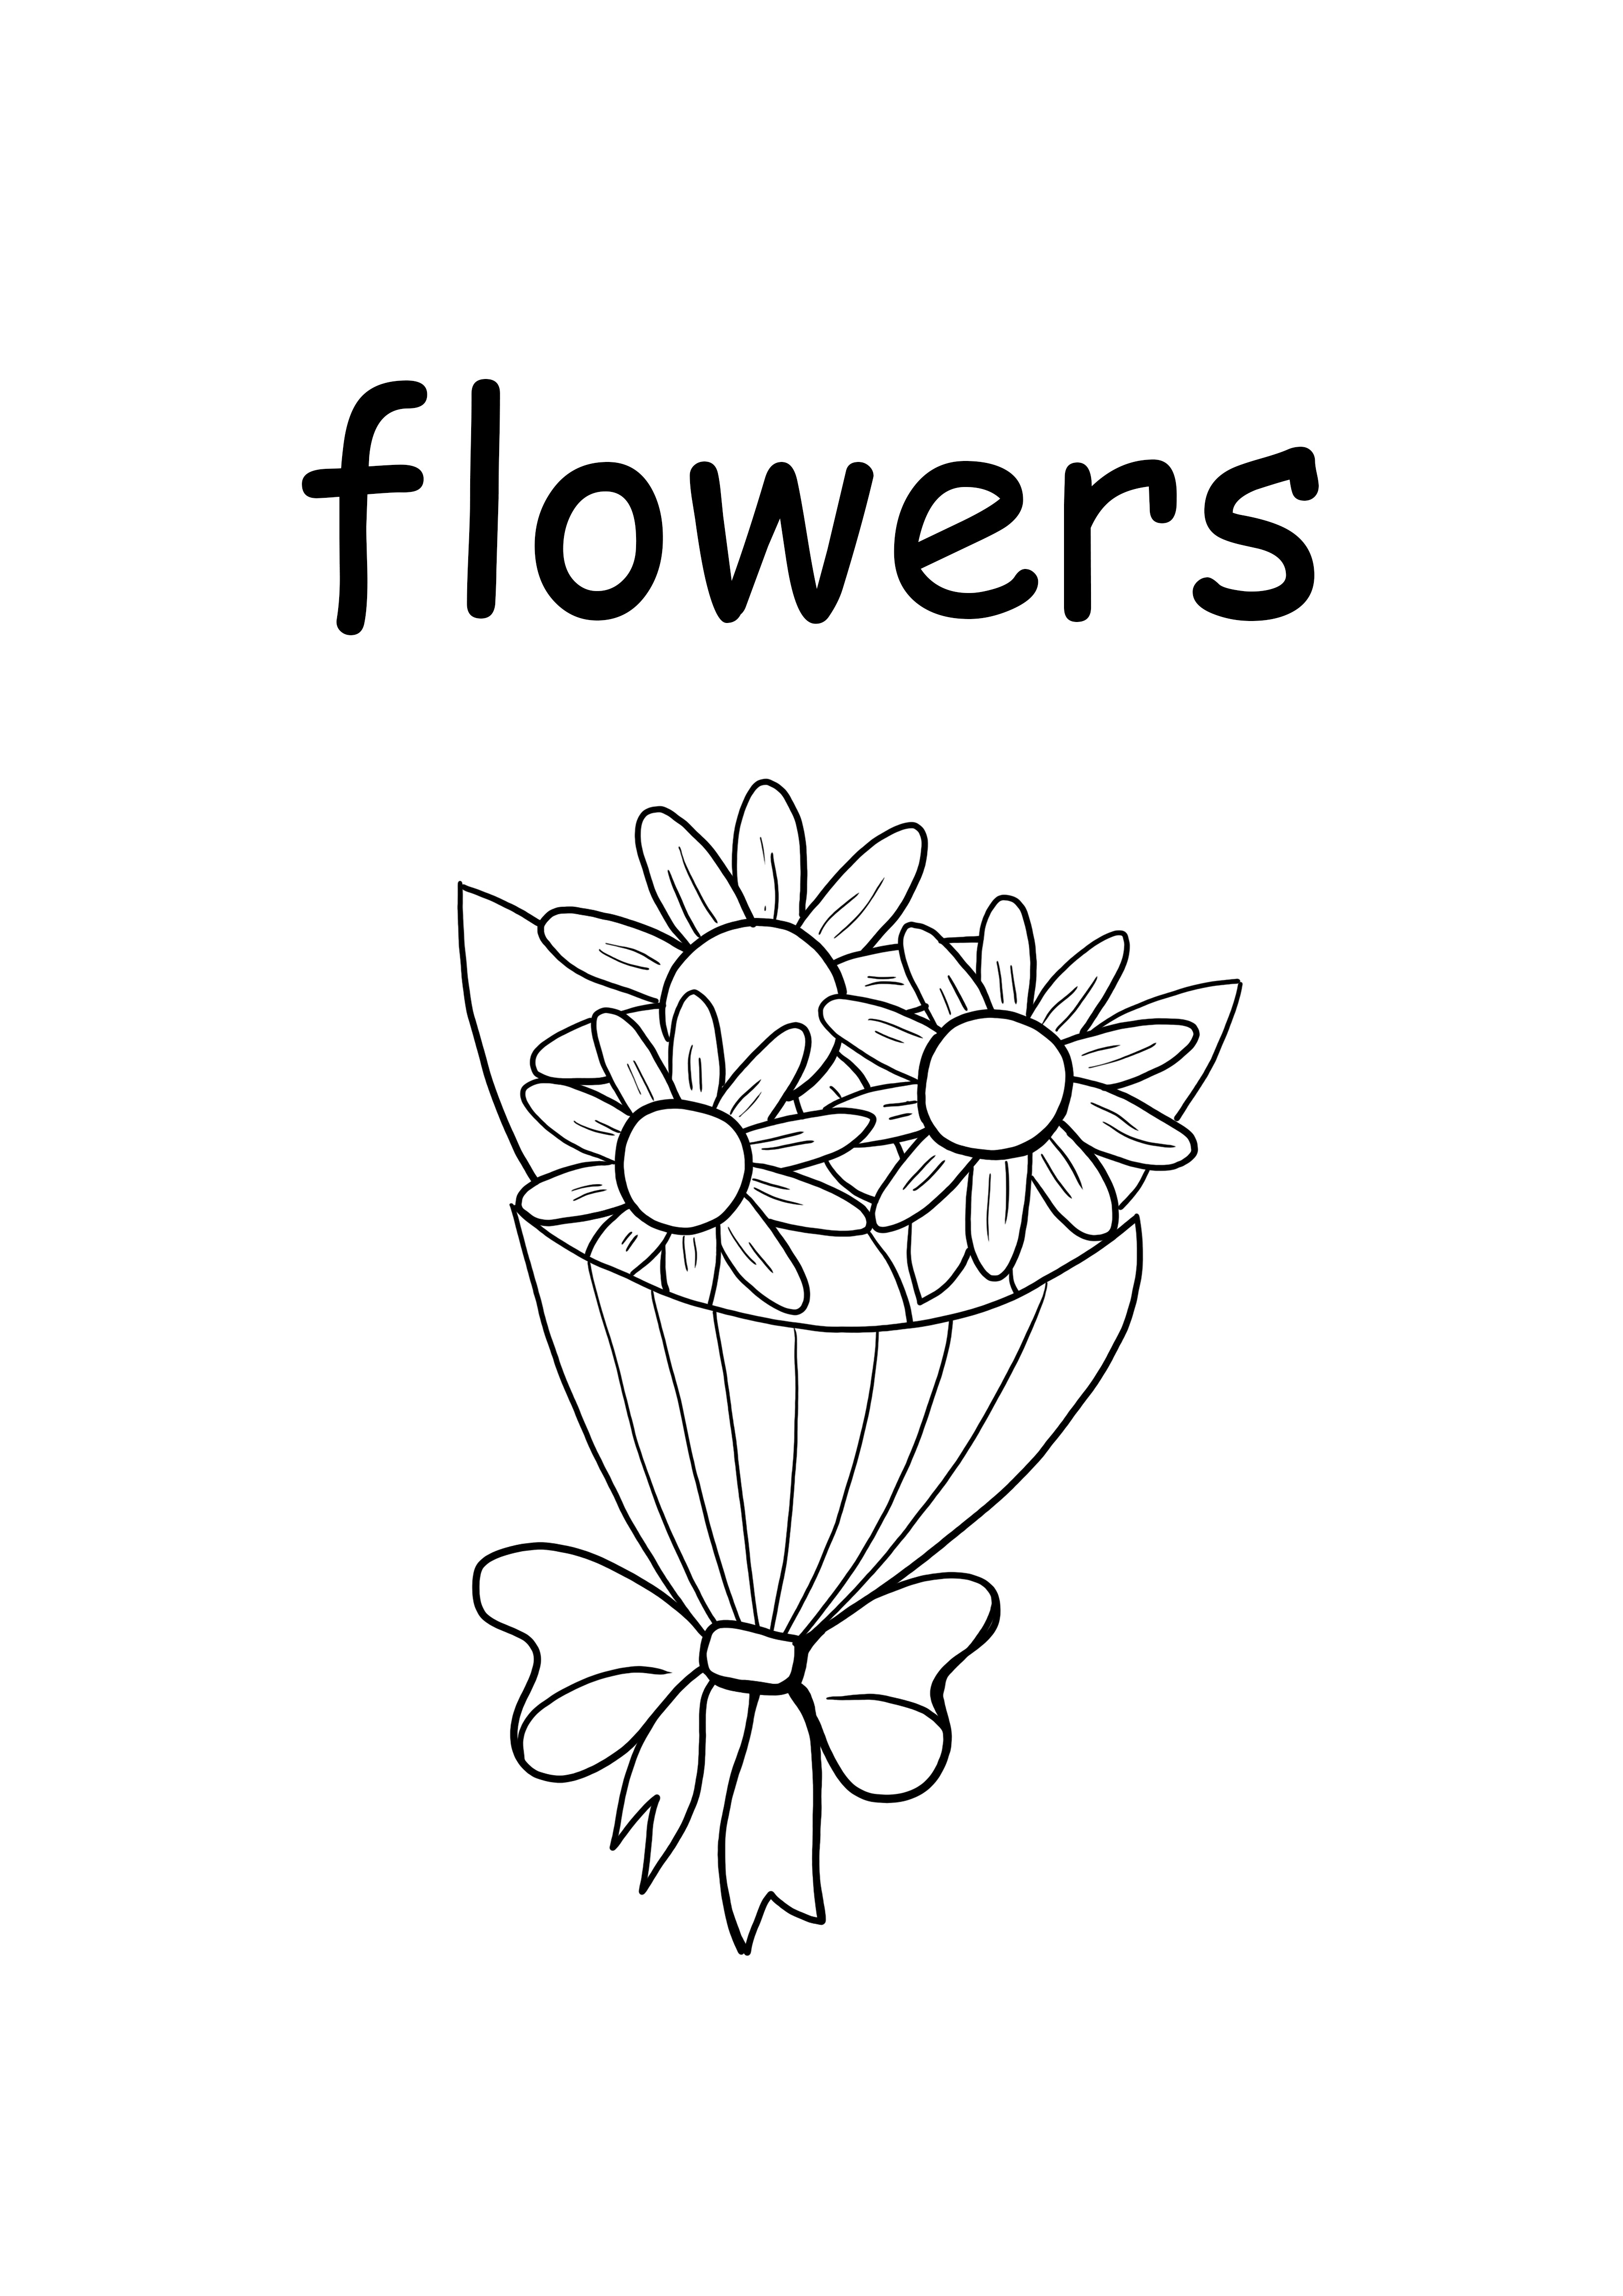 f dla kwiatów małe słowo za darmo do wydrukowania i pokolorowania strony